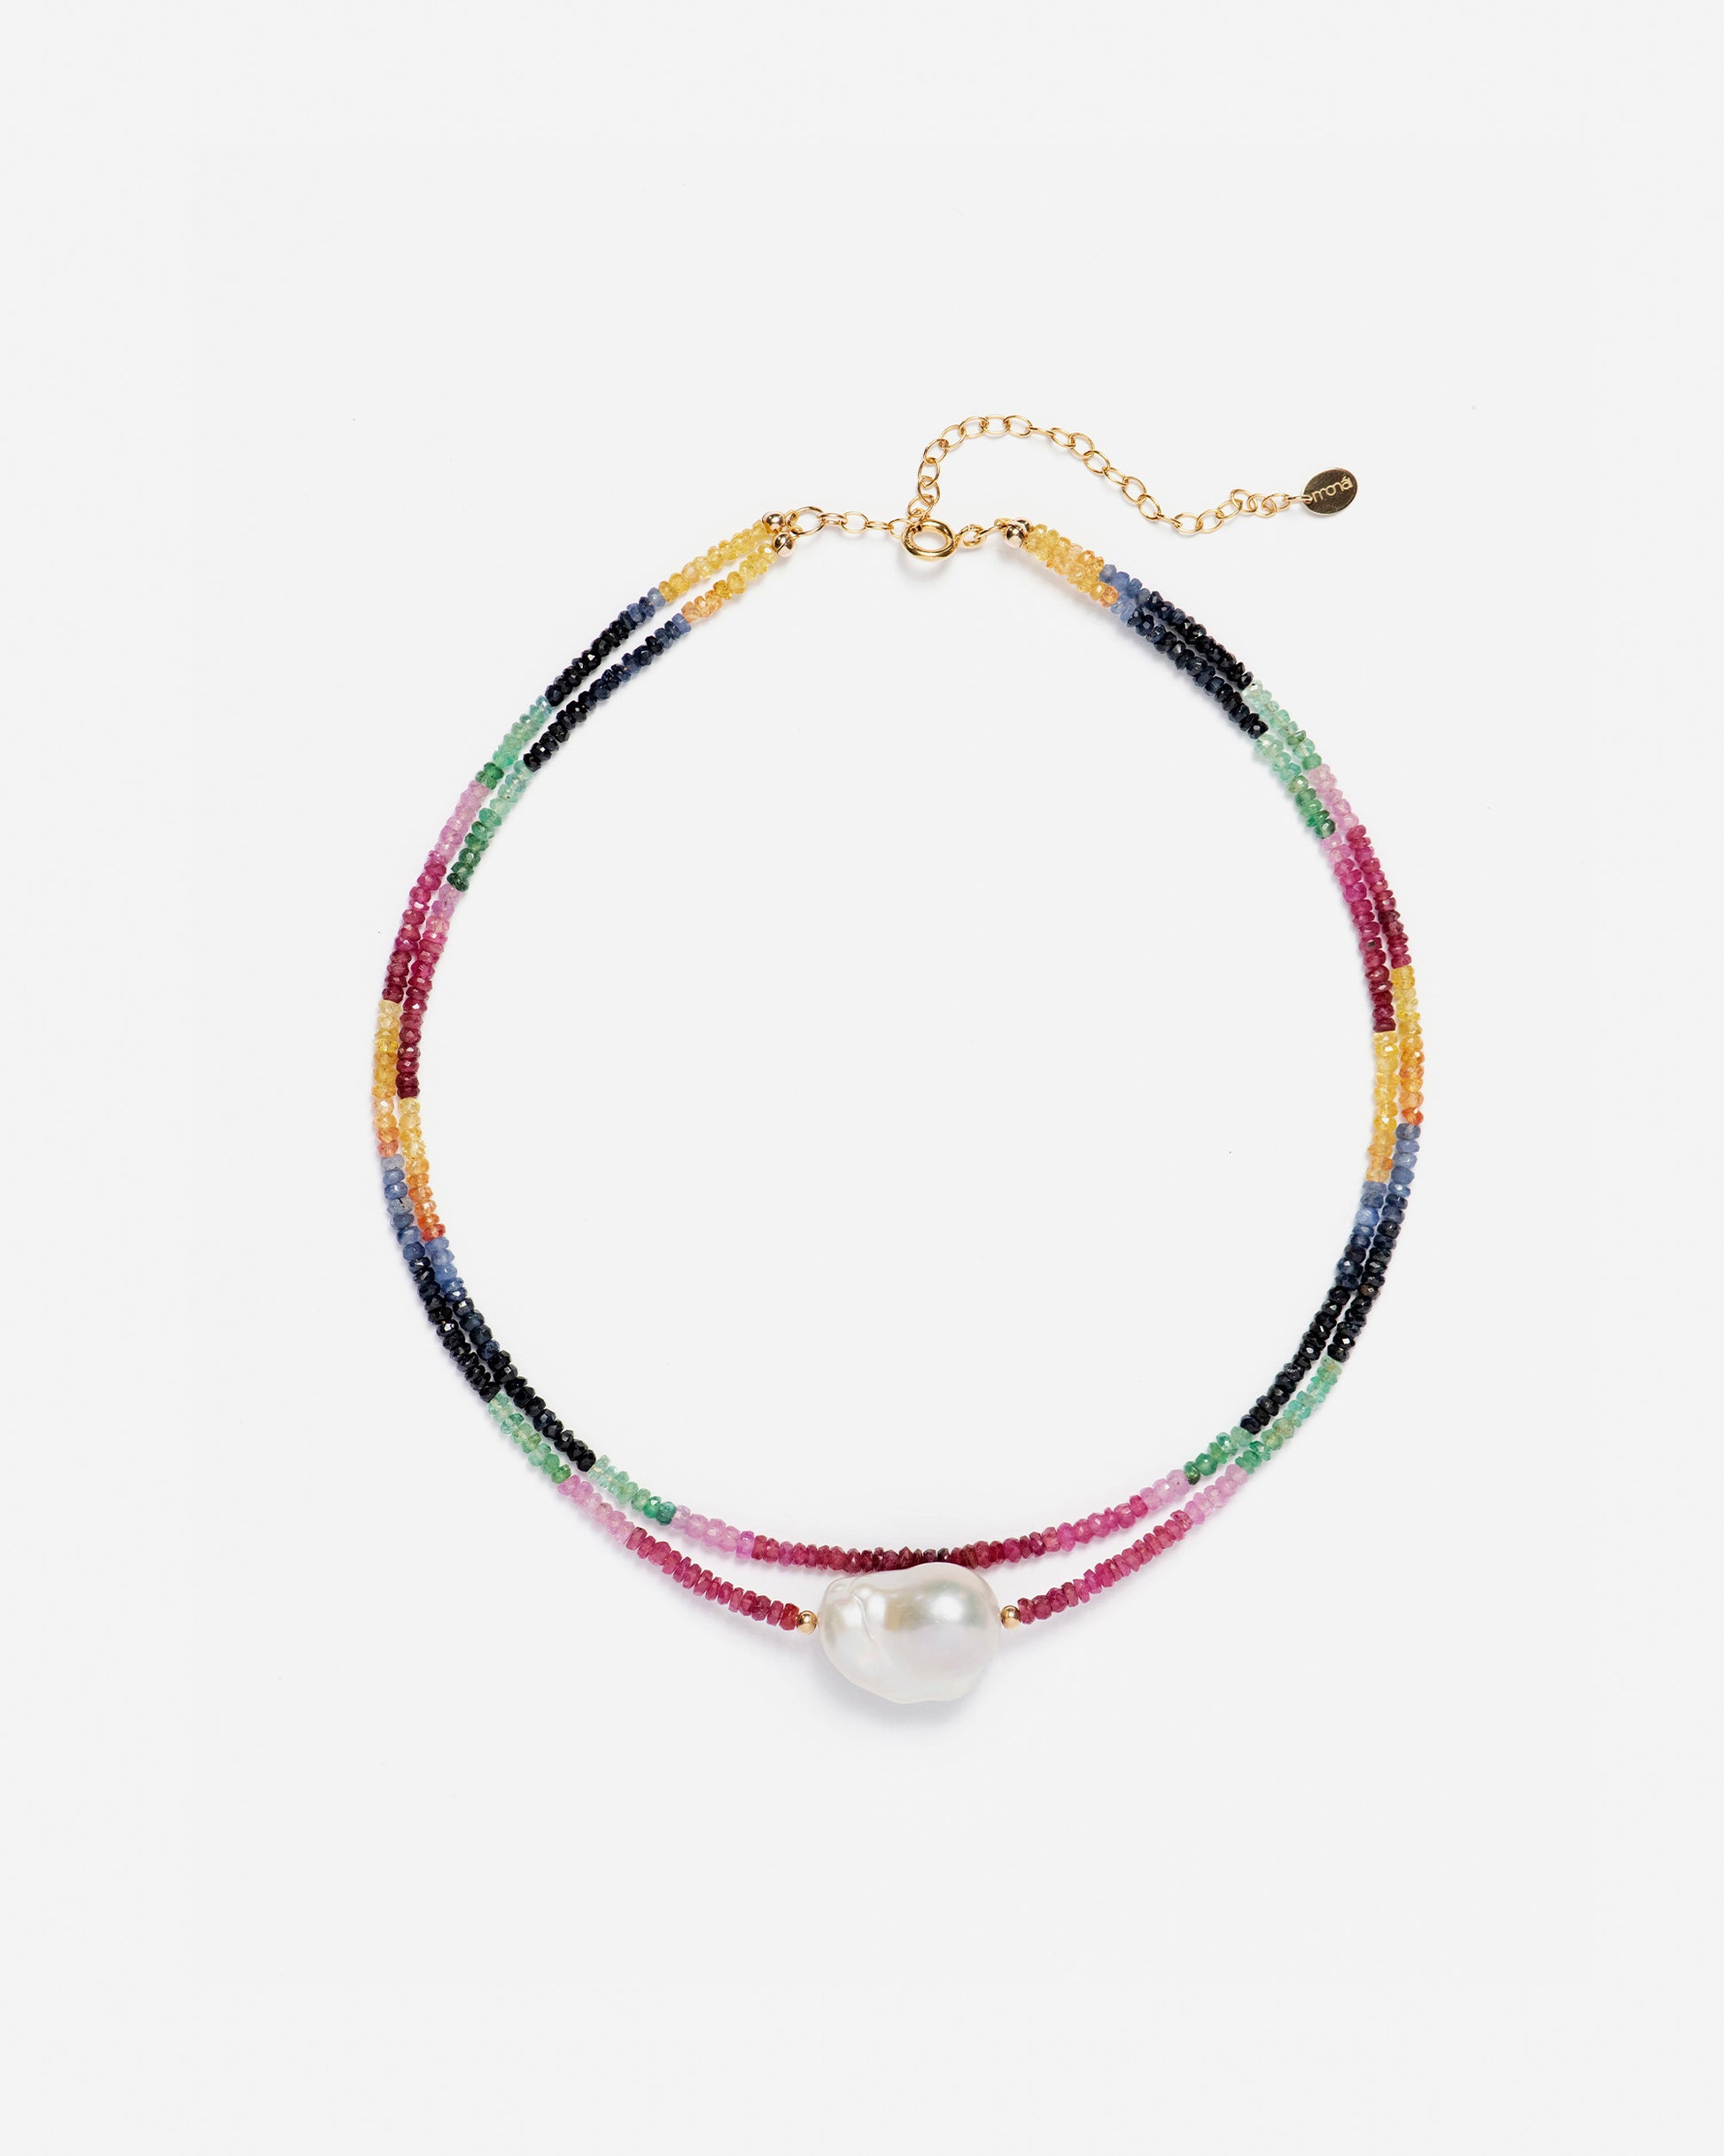 Baroque Pearl Rainbow Necklace